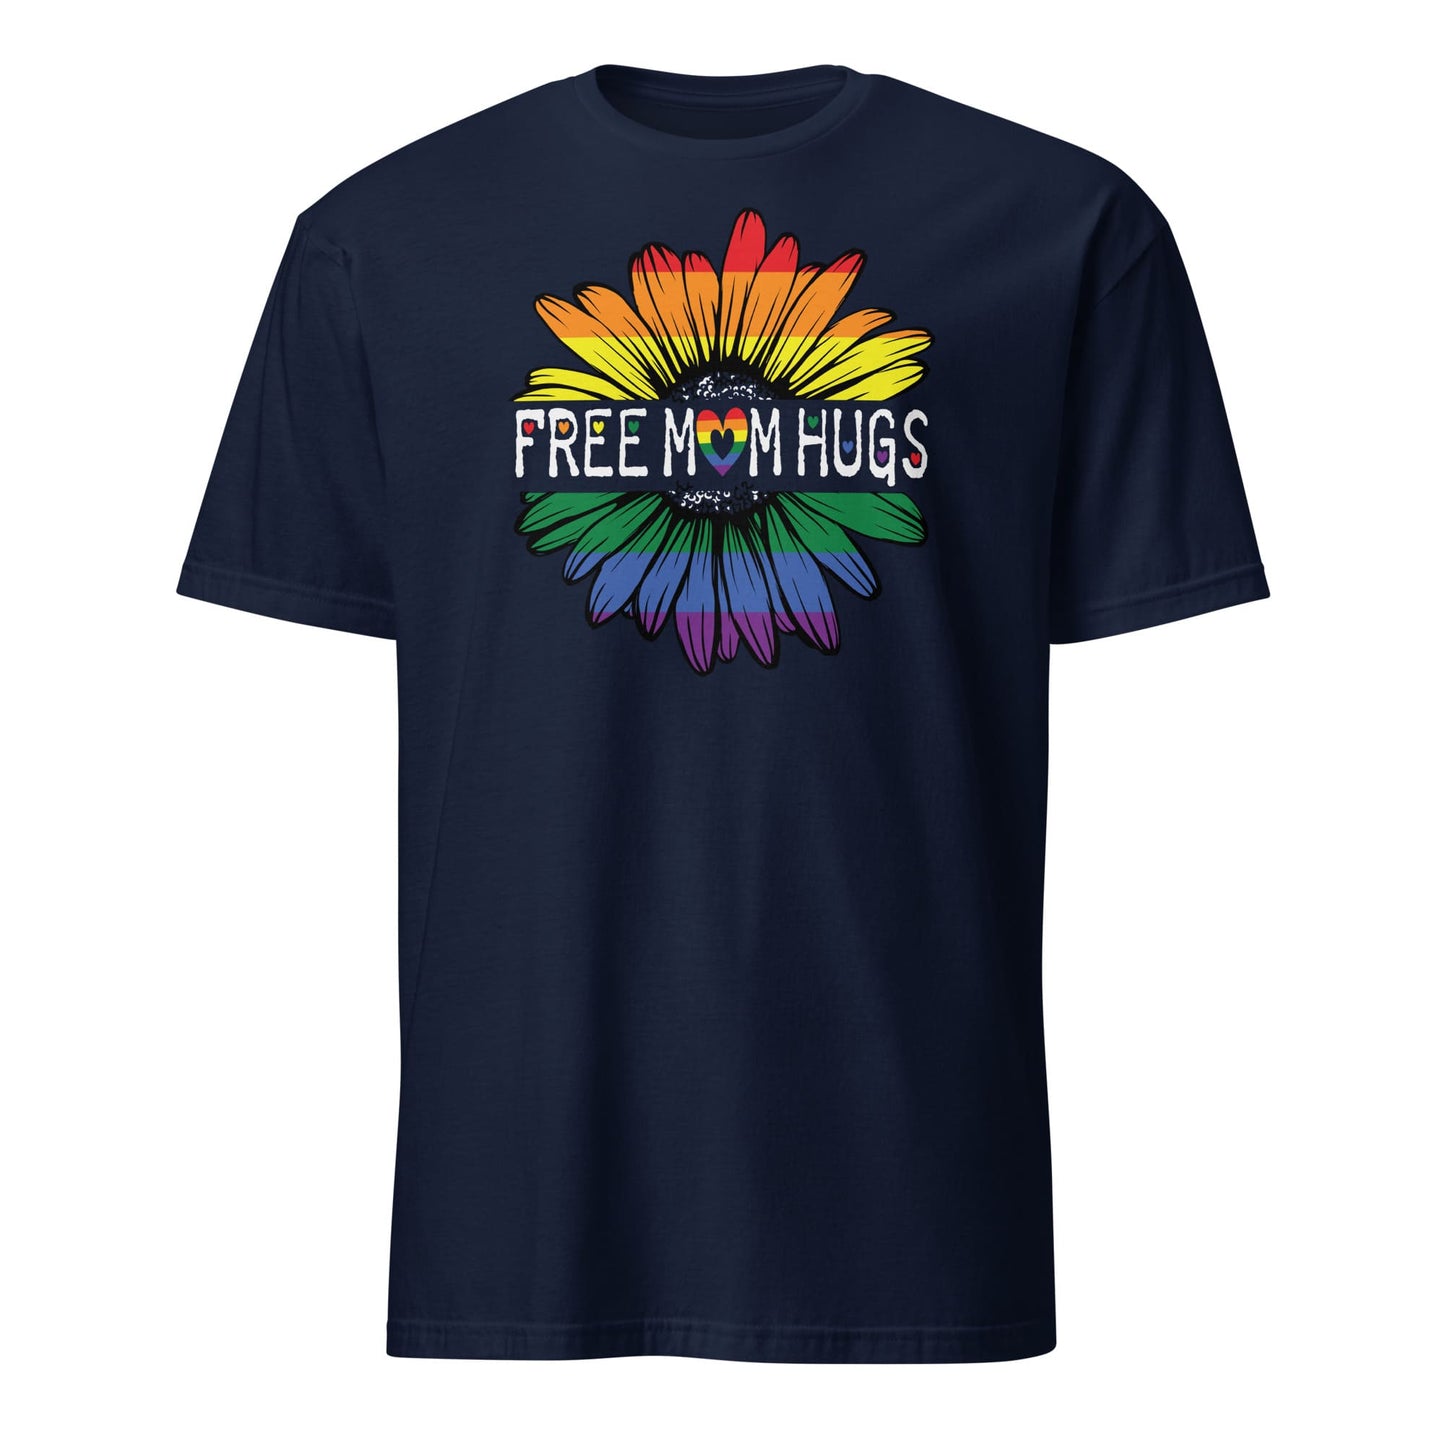 LGBTQ ally shirt, free mom hugs rainbow pride, navy